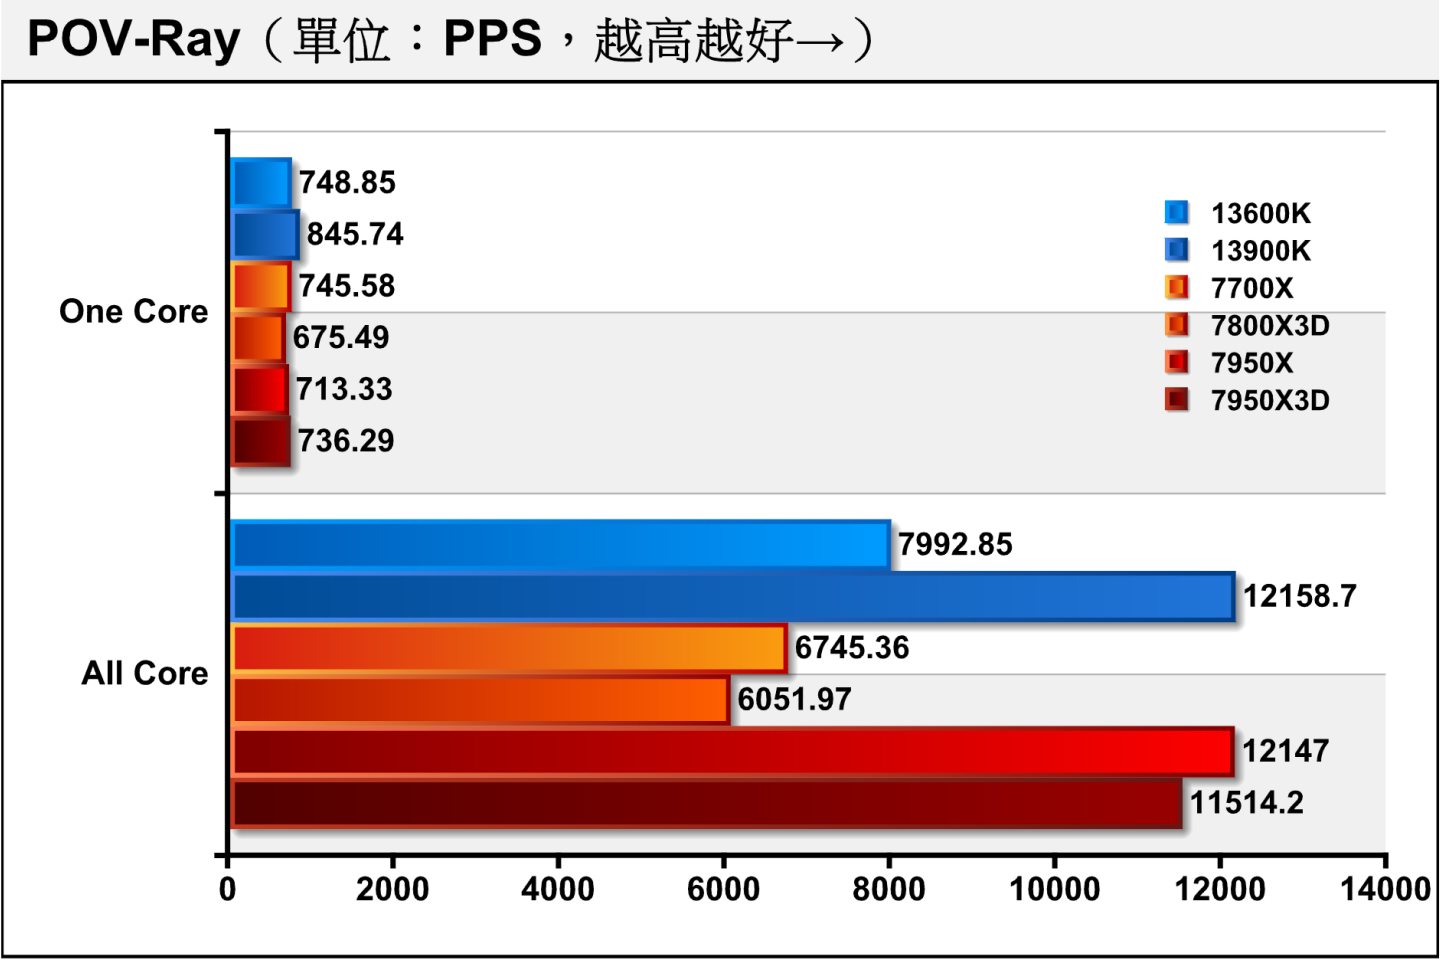 在POV-Ray光線追蹤渲染測試，7800X3D單核心項目落後7700X的幅度為9.4%，略大於彼Turbo時脈差距的7.41%。